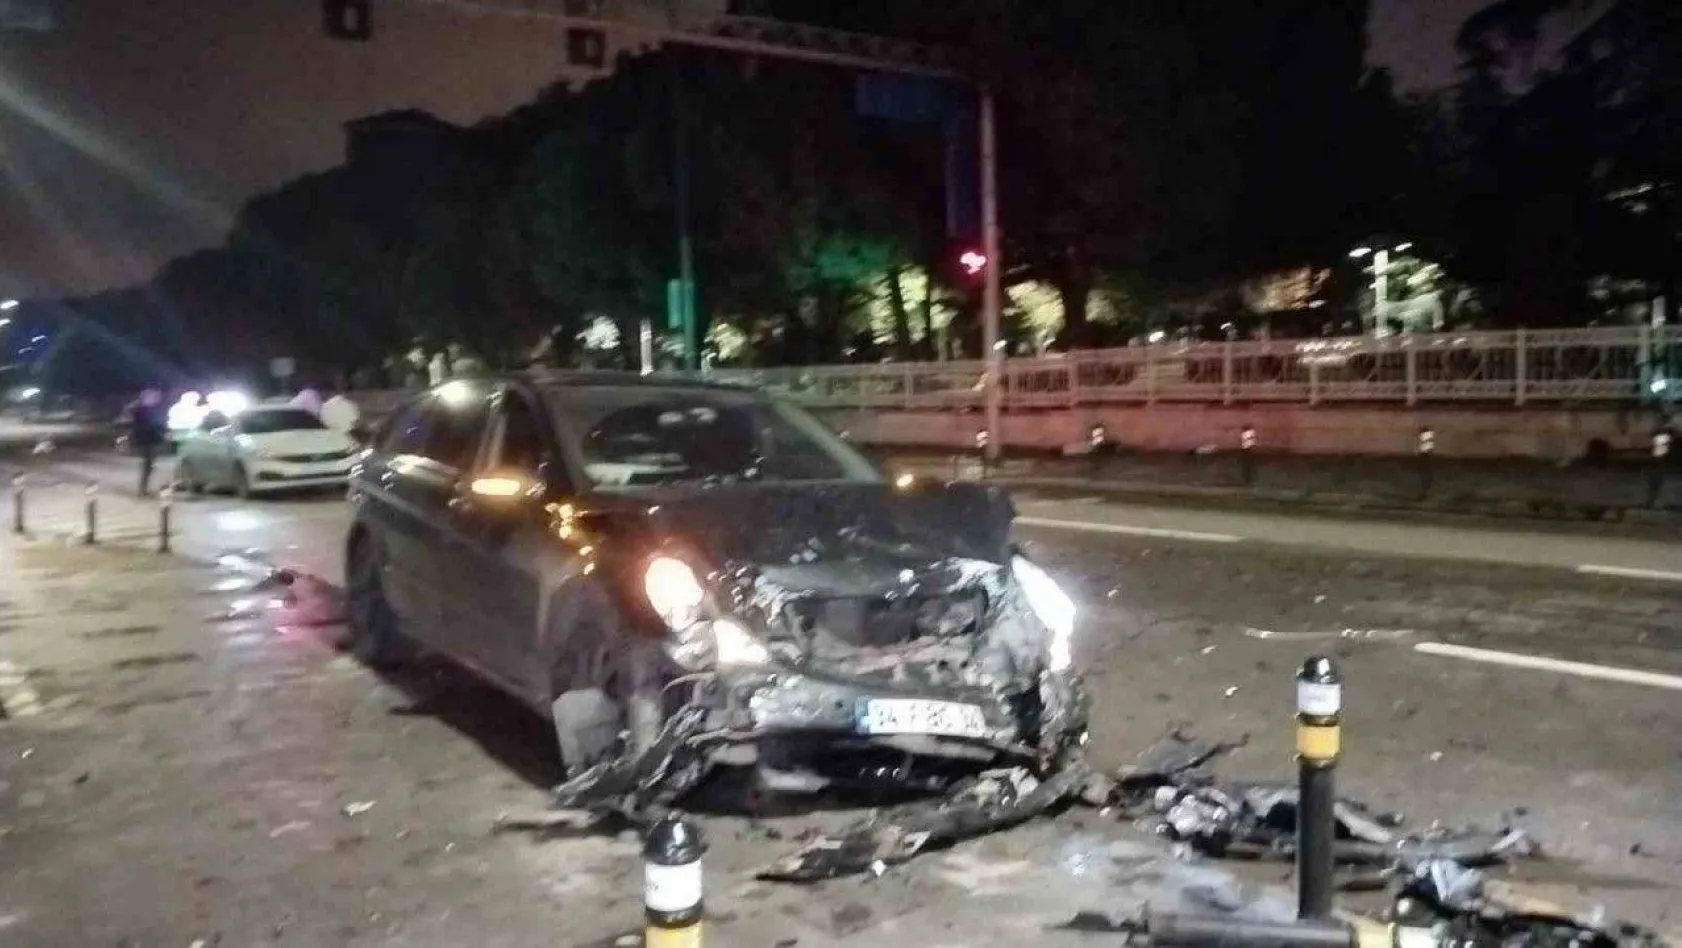 Kadıköy'de alkollü sürücü ışıklarda duran araçlara çarptı: 1 ağır yaralı